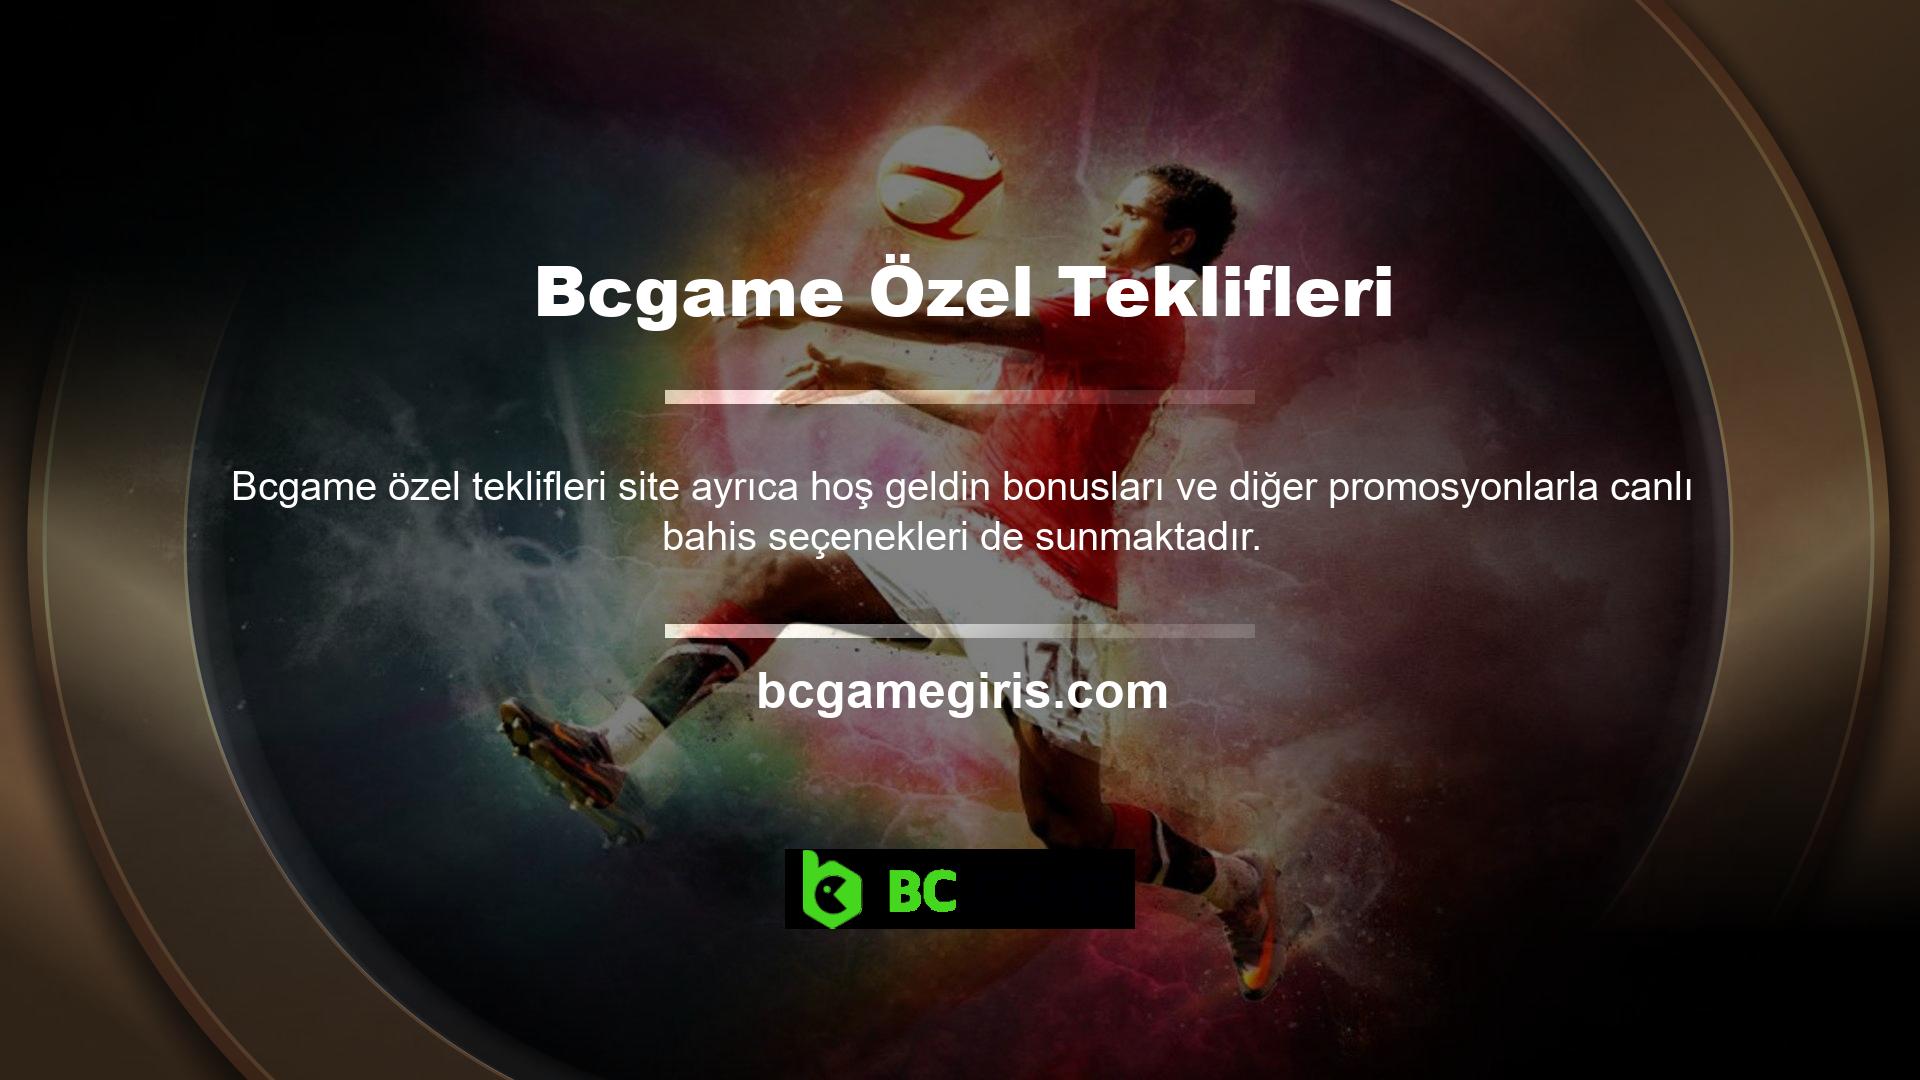 Bcgame ayrıca Türkçe dilini de desteklemekte ve şartlar ve koşullara göre iletişim bilgileri, kullanıcı bilgileri ve bahis sayfalarını sunmaktadır